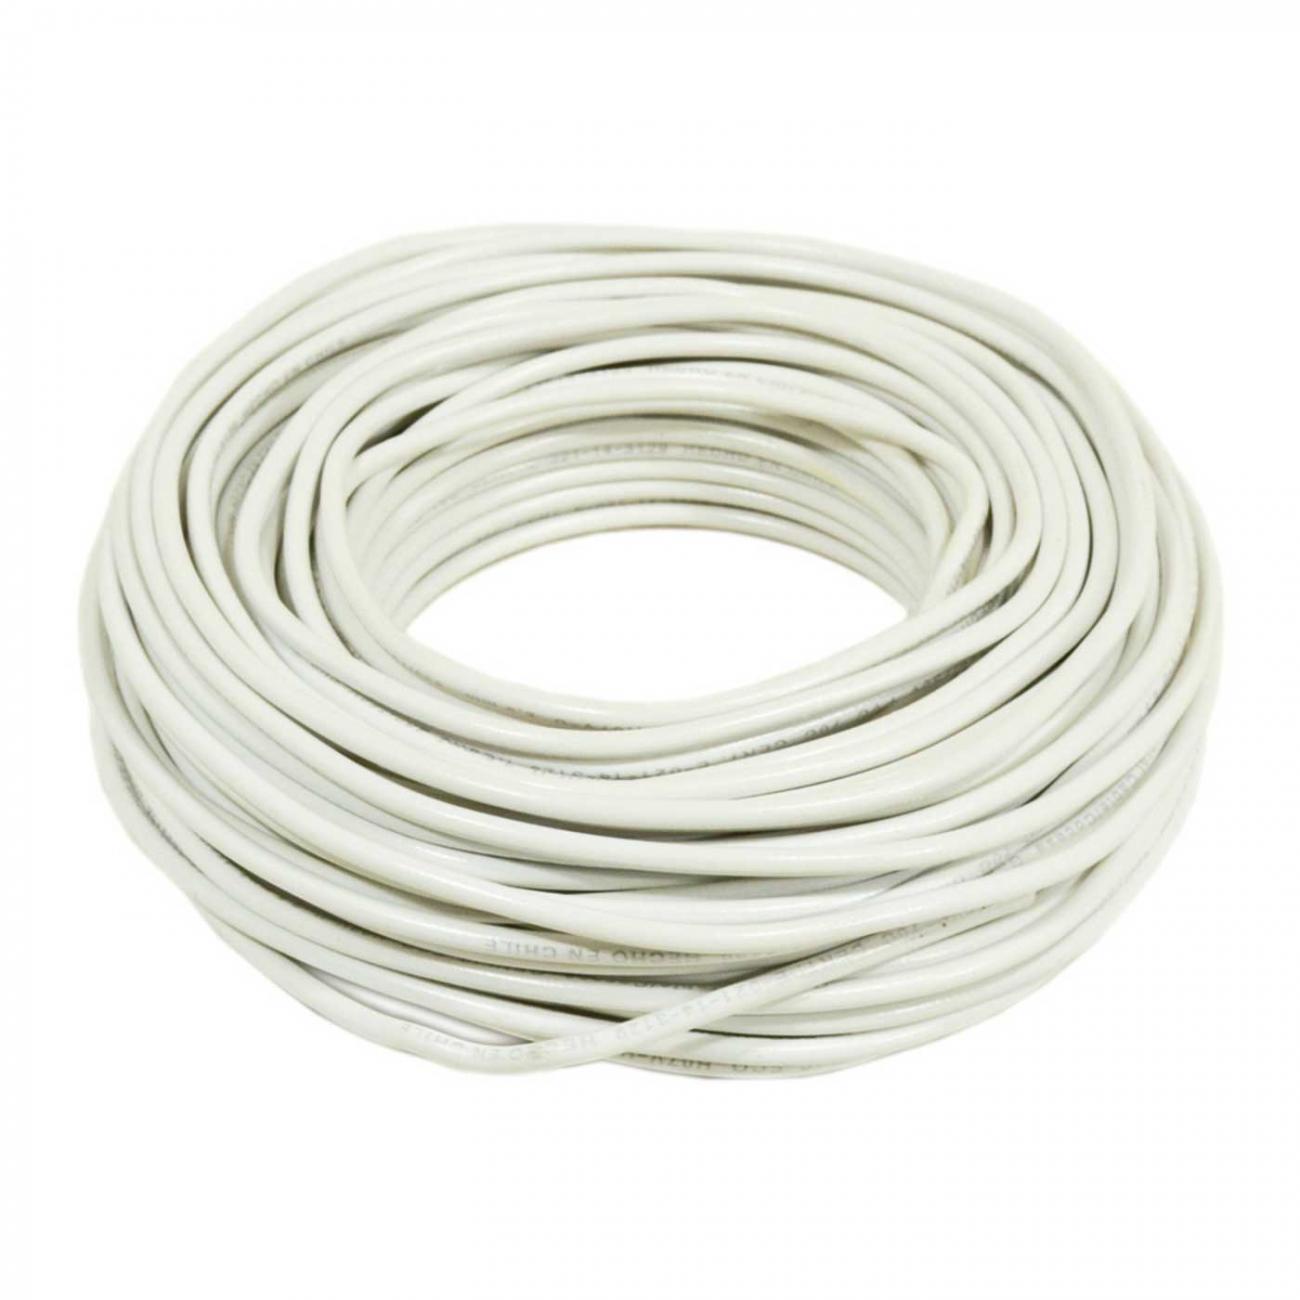 Cable Evaflex 1,5 mm2 blanco rollo 100 m